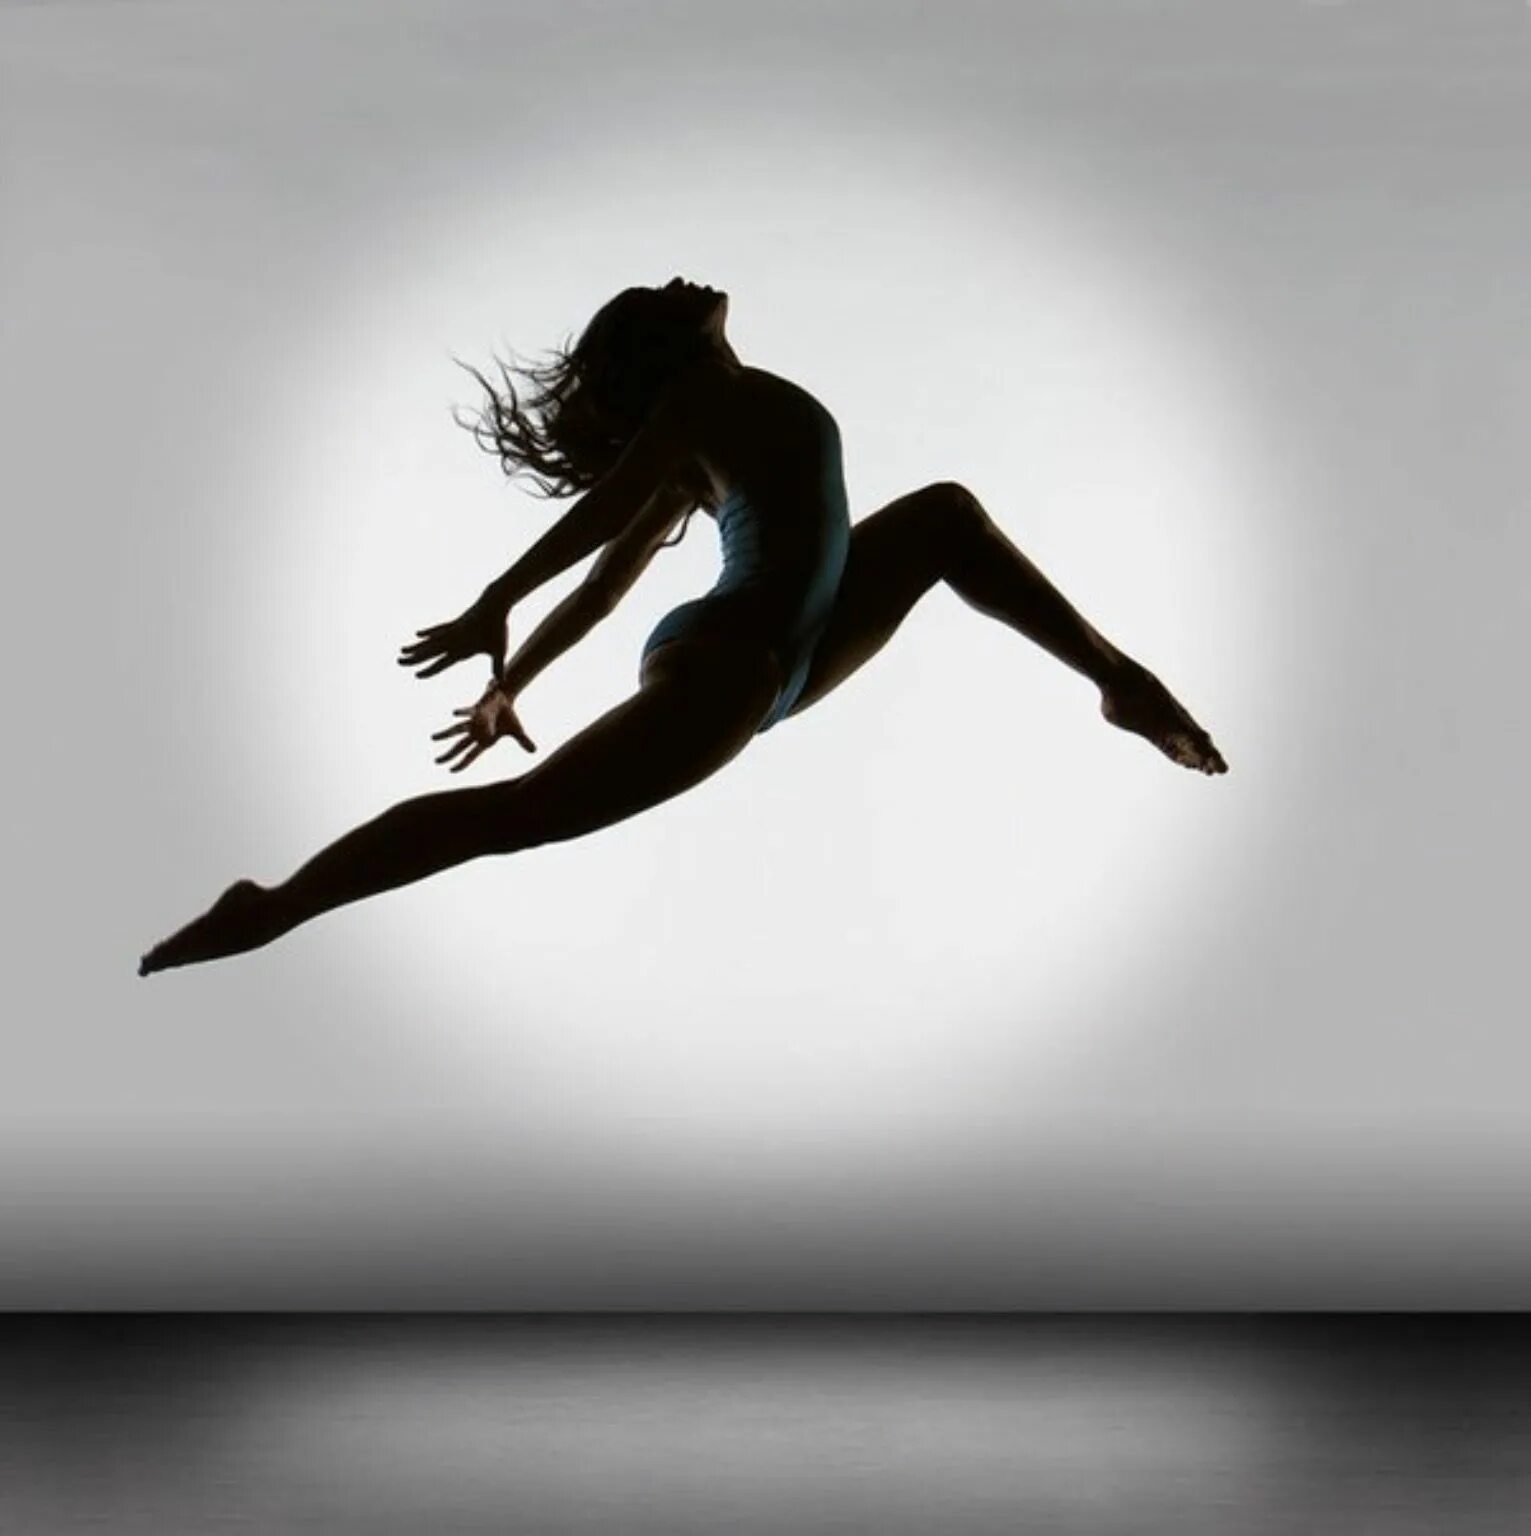 Балерины от Richard calmes. Richard calmes photographer. Современные танцы. Девушка в движении.